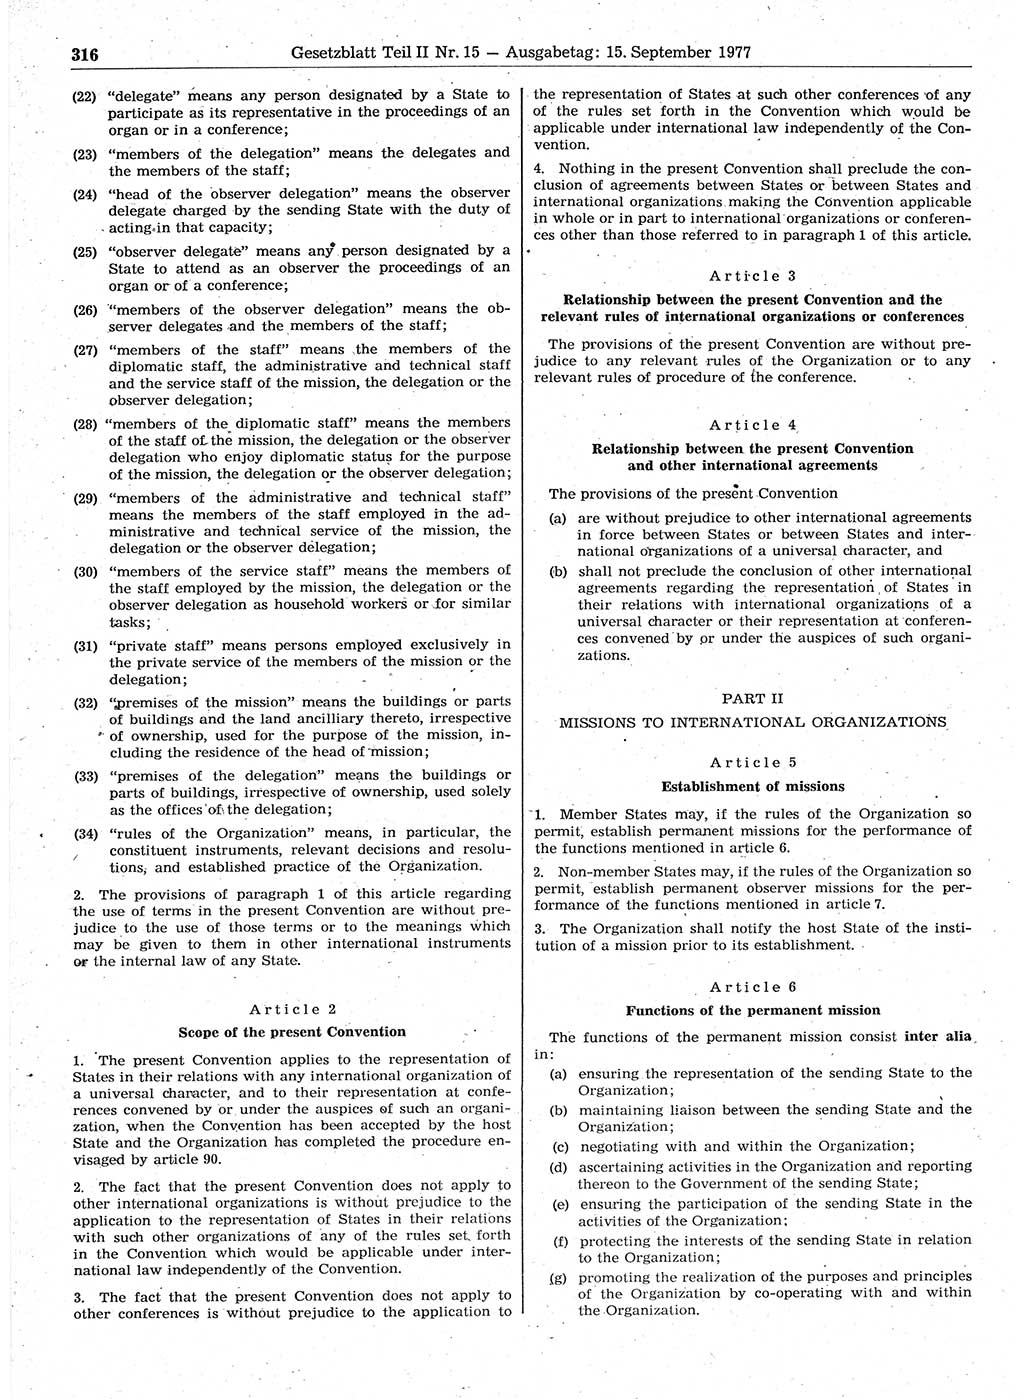 Gesetzblatt (GBl.) der Deutschen Demokratischen Republik (DDR) Teil ⅠⅠ 1977, Seite 316 (GBl. DDR ⅠⅠ 1977, S. 316)